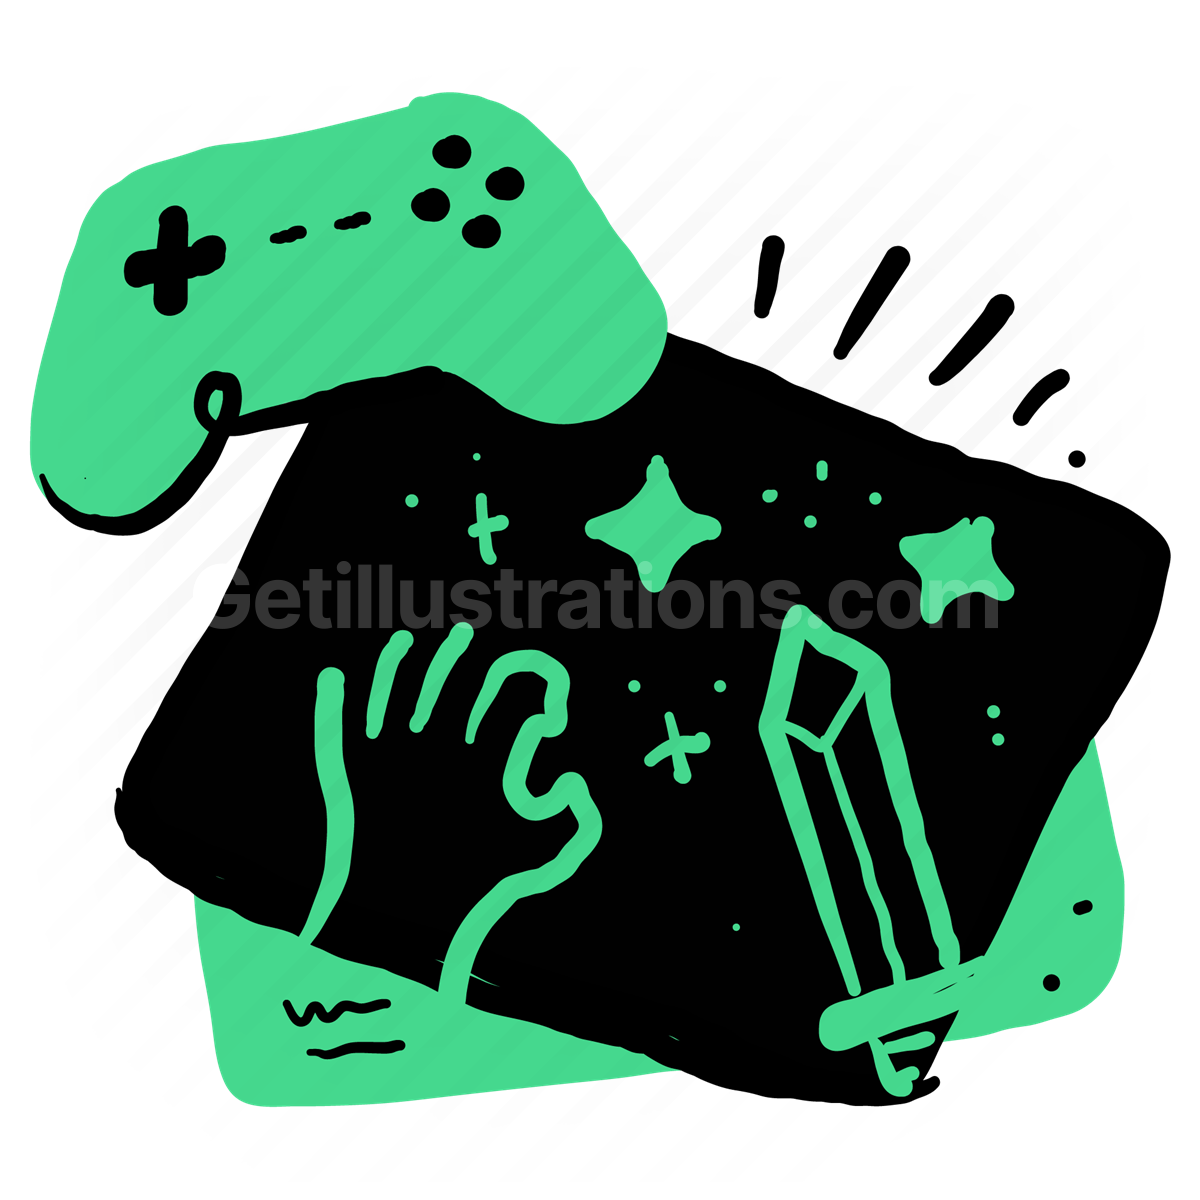 Gaming Industry illustration